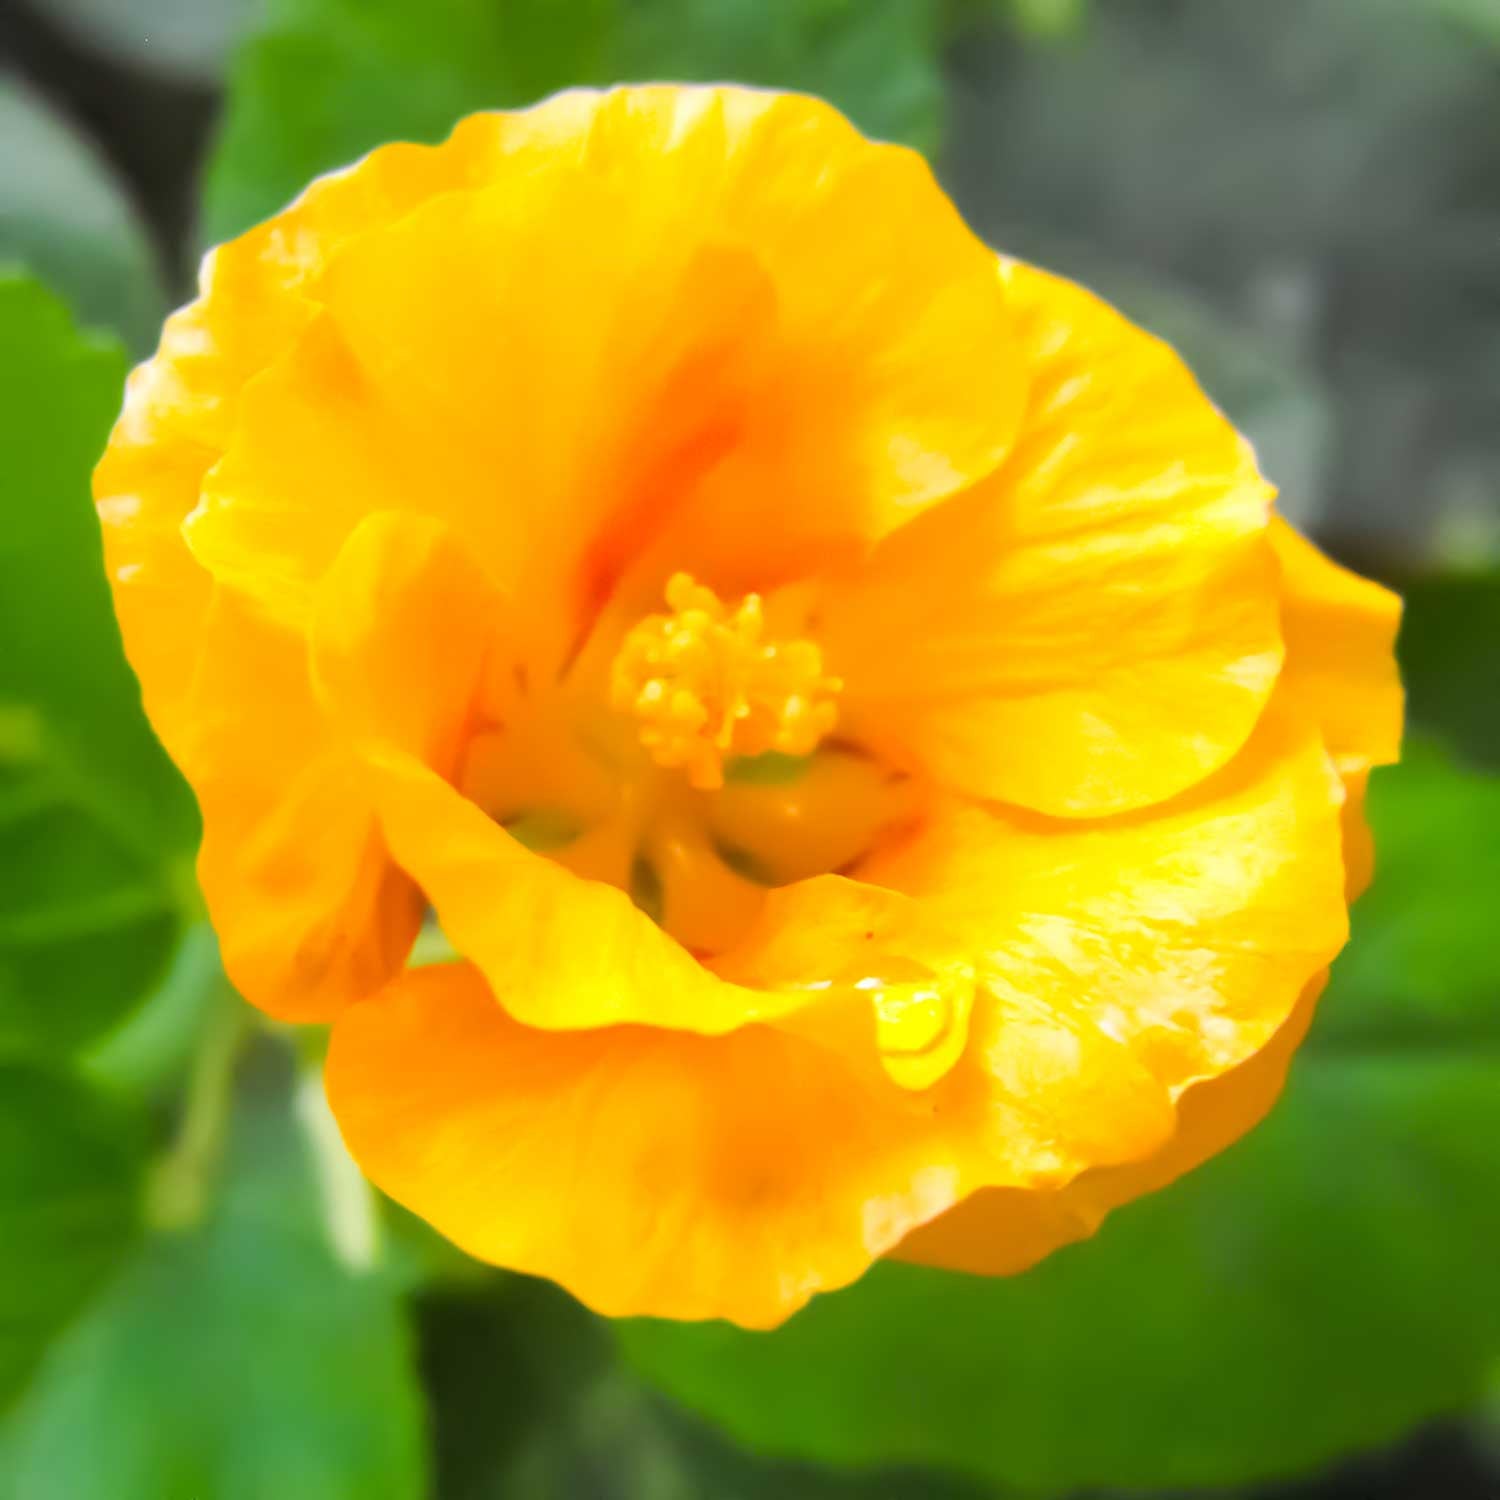 ʻIlima Flower Gold Enamel Pin